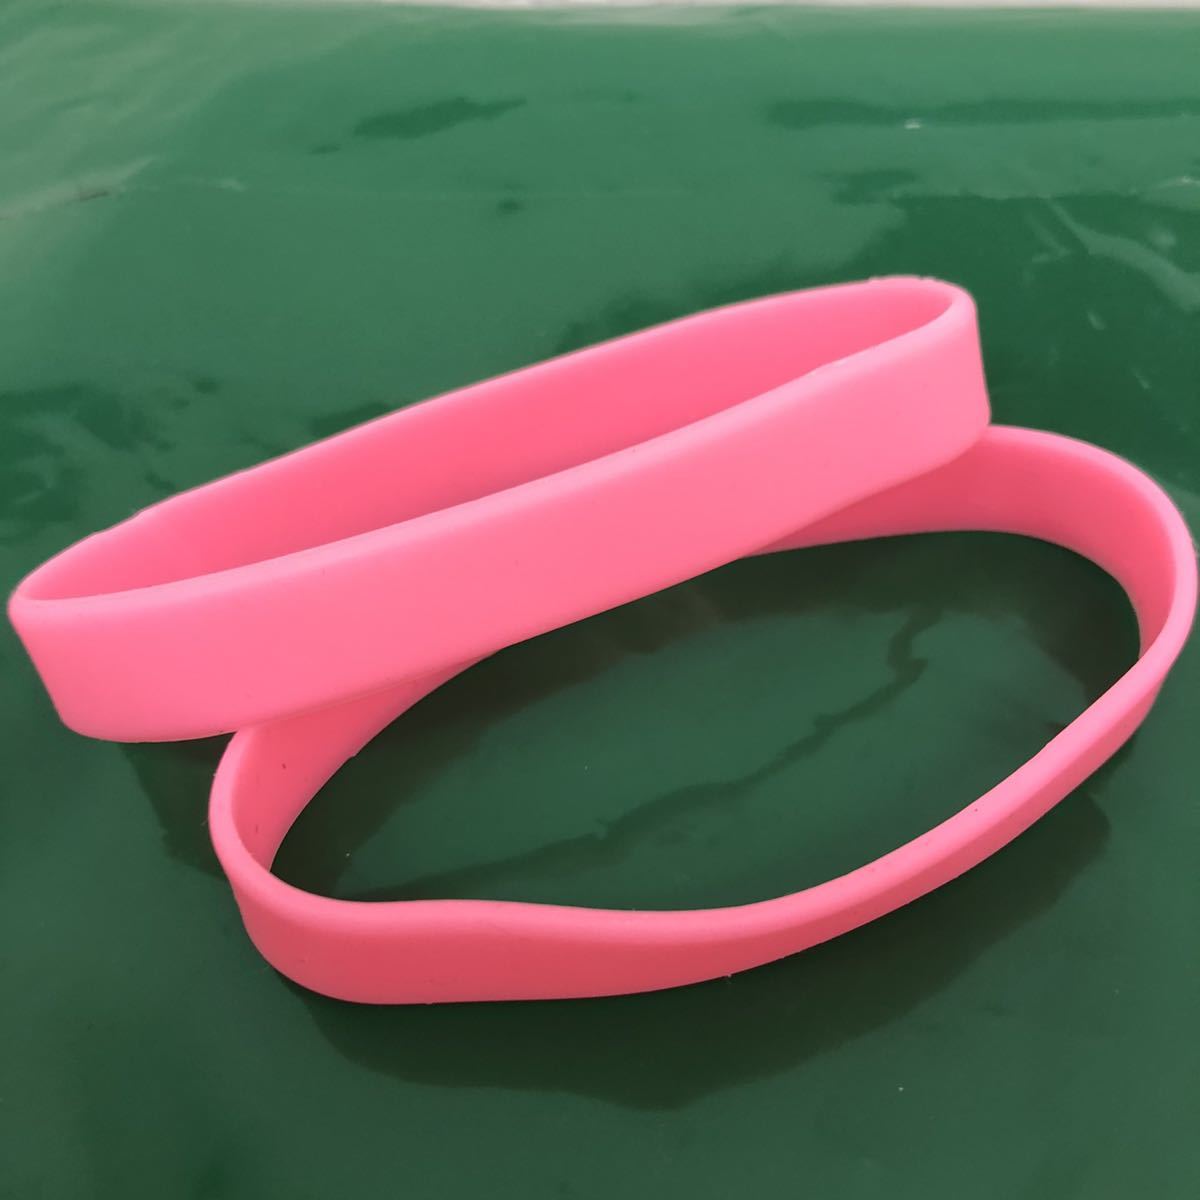 【 неиспользуемый 】 силиконовый  браслет  　 2шт. 　 розовый 　 силиконовый  лента 　 спорт 　 внутренний диаметр  60mm